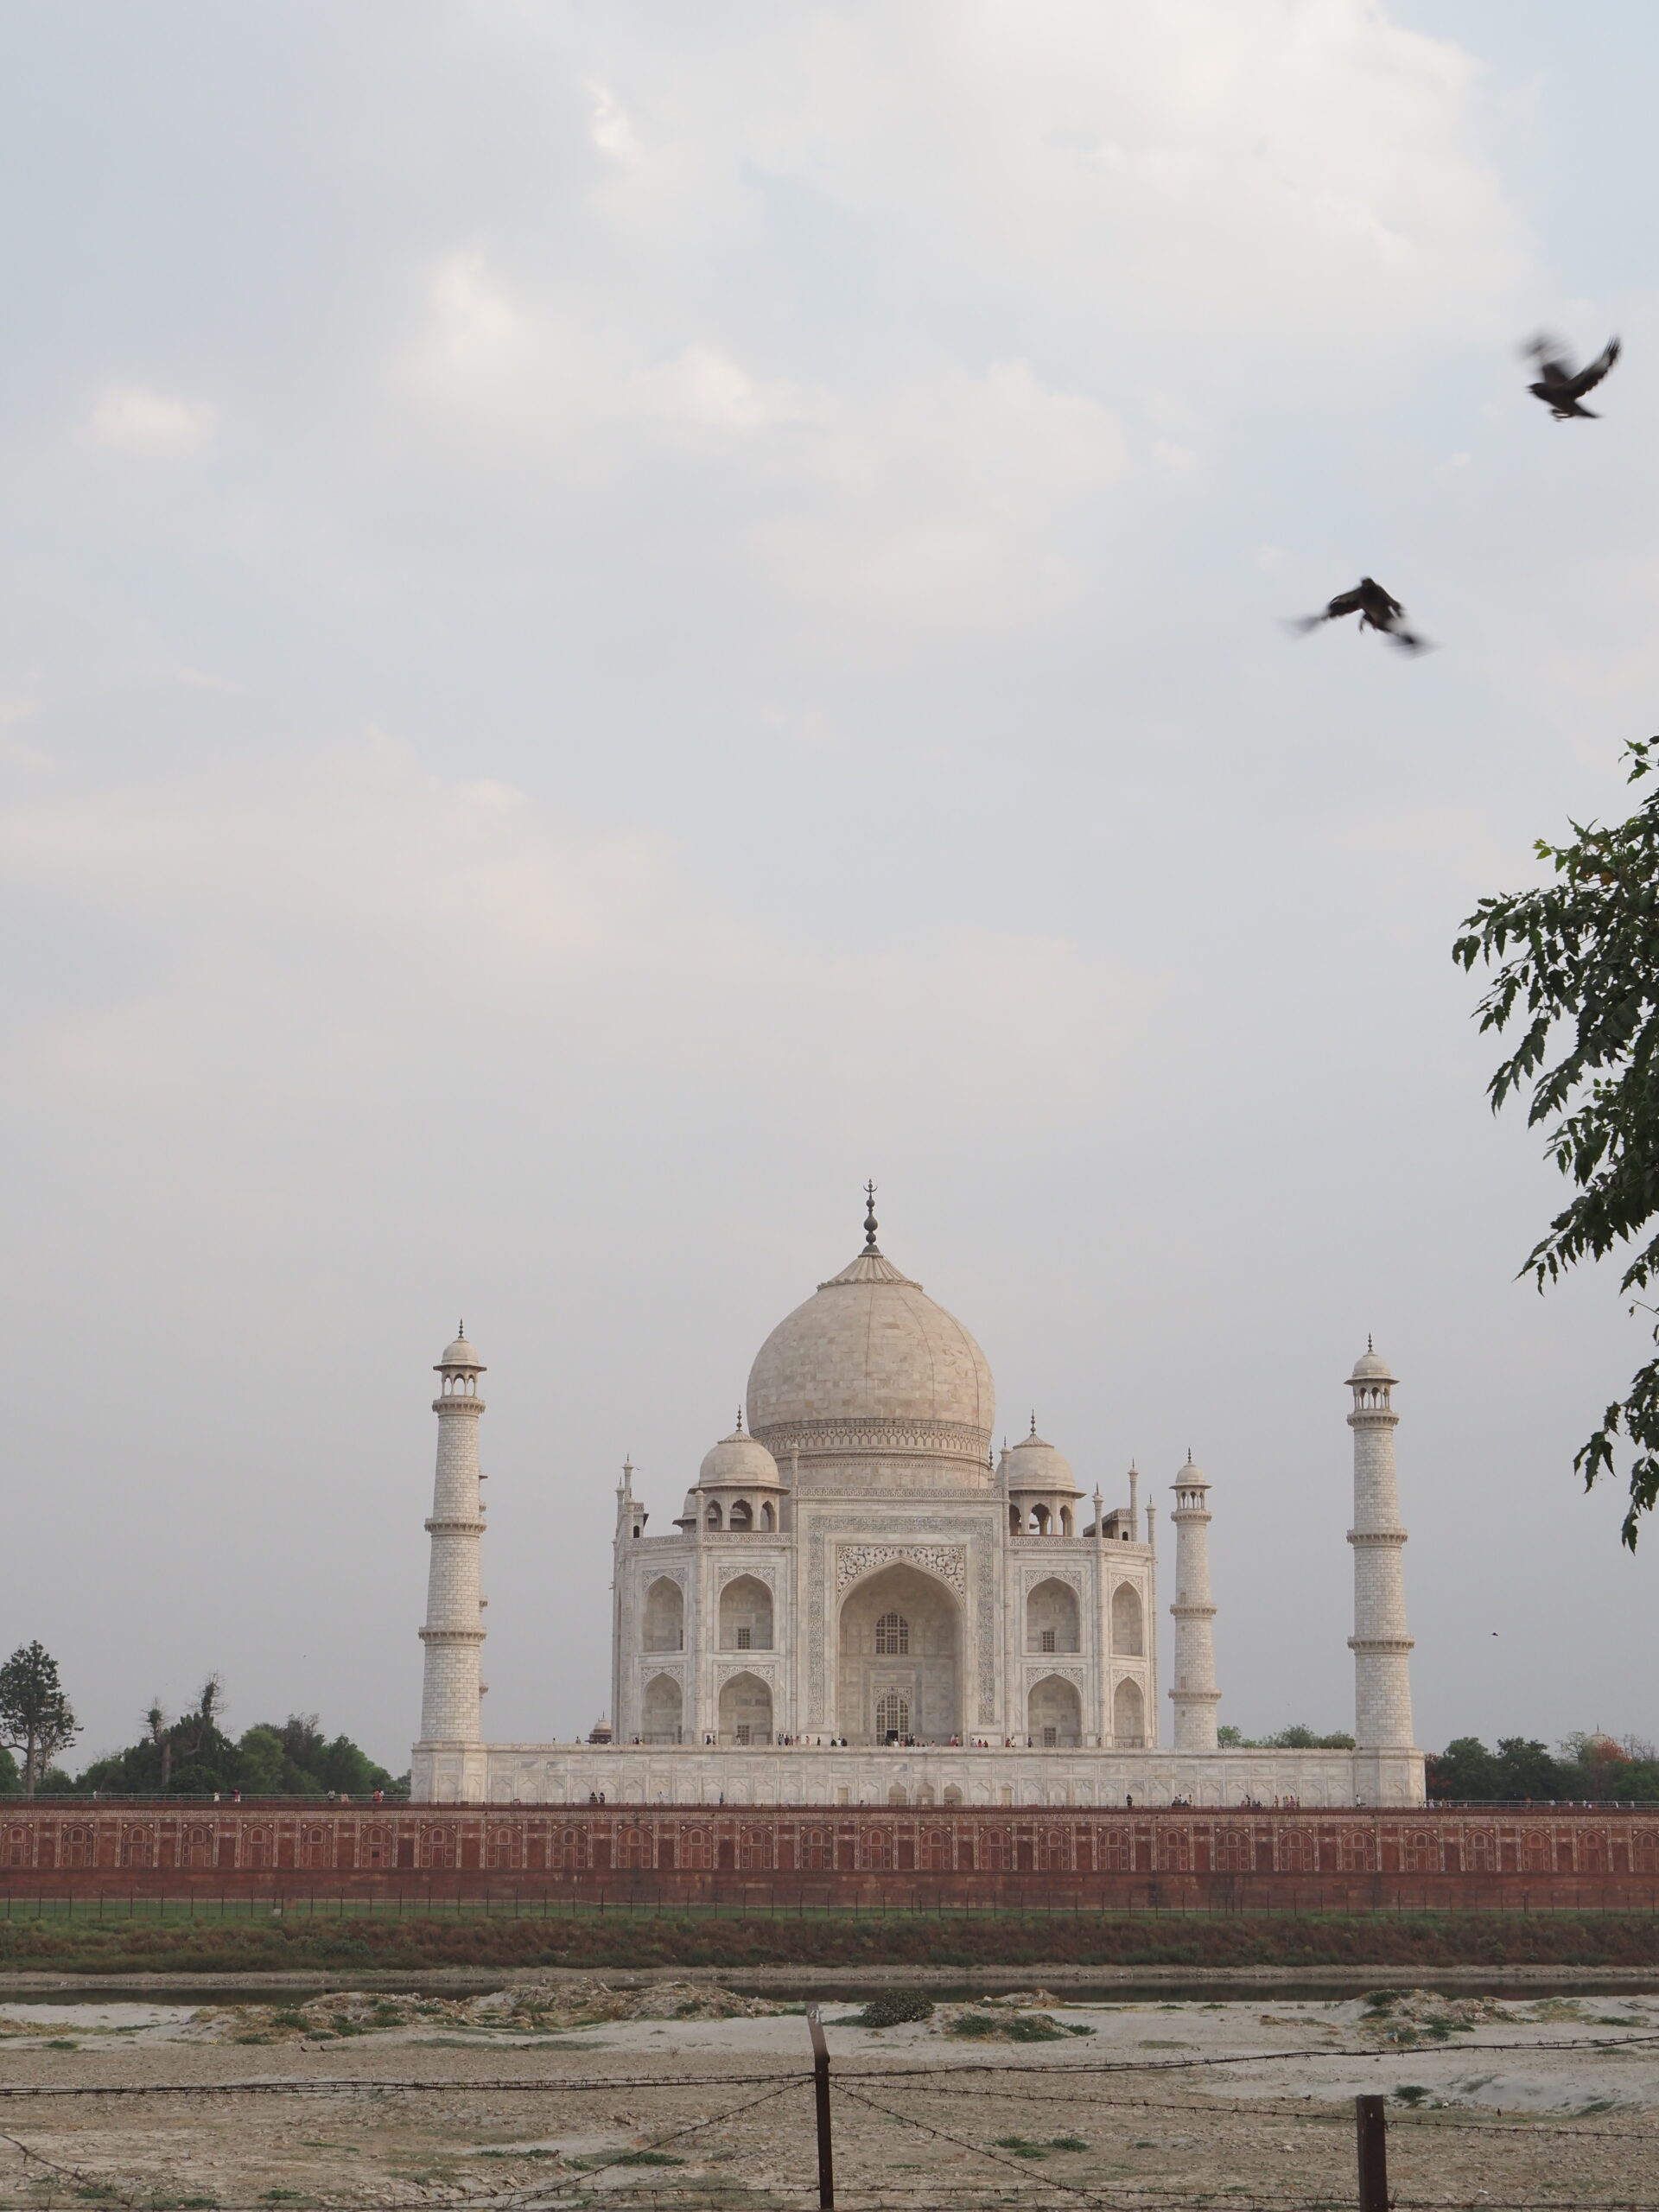 Mehtab Bagh : meilleur point de vue sur le Taj Mahal à Agra